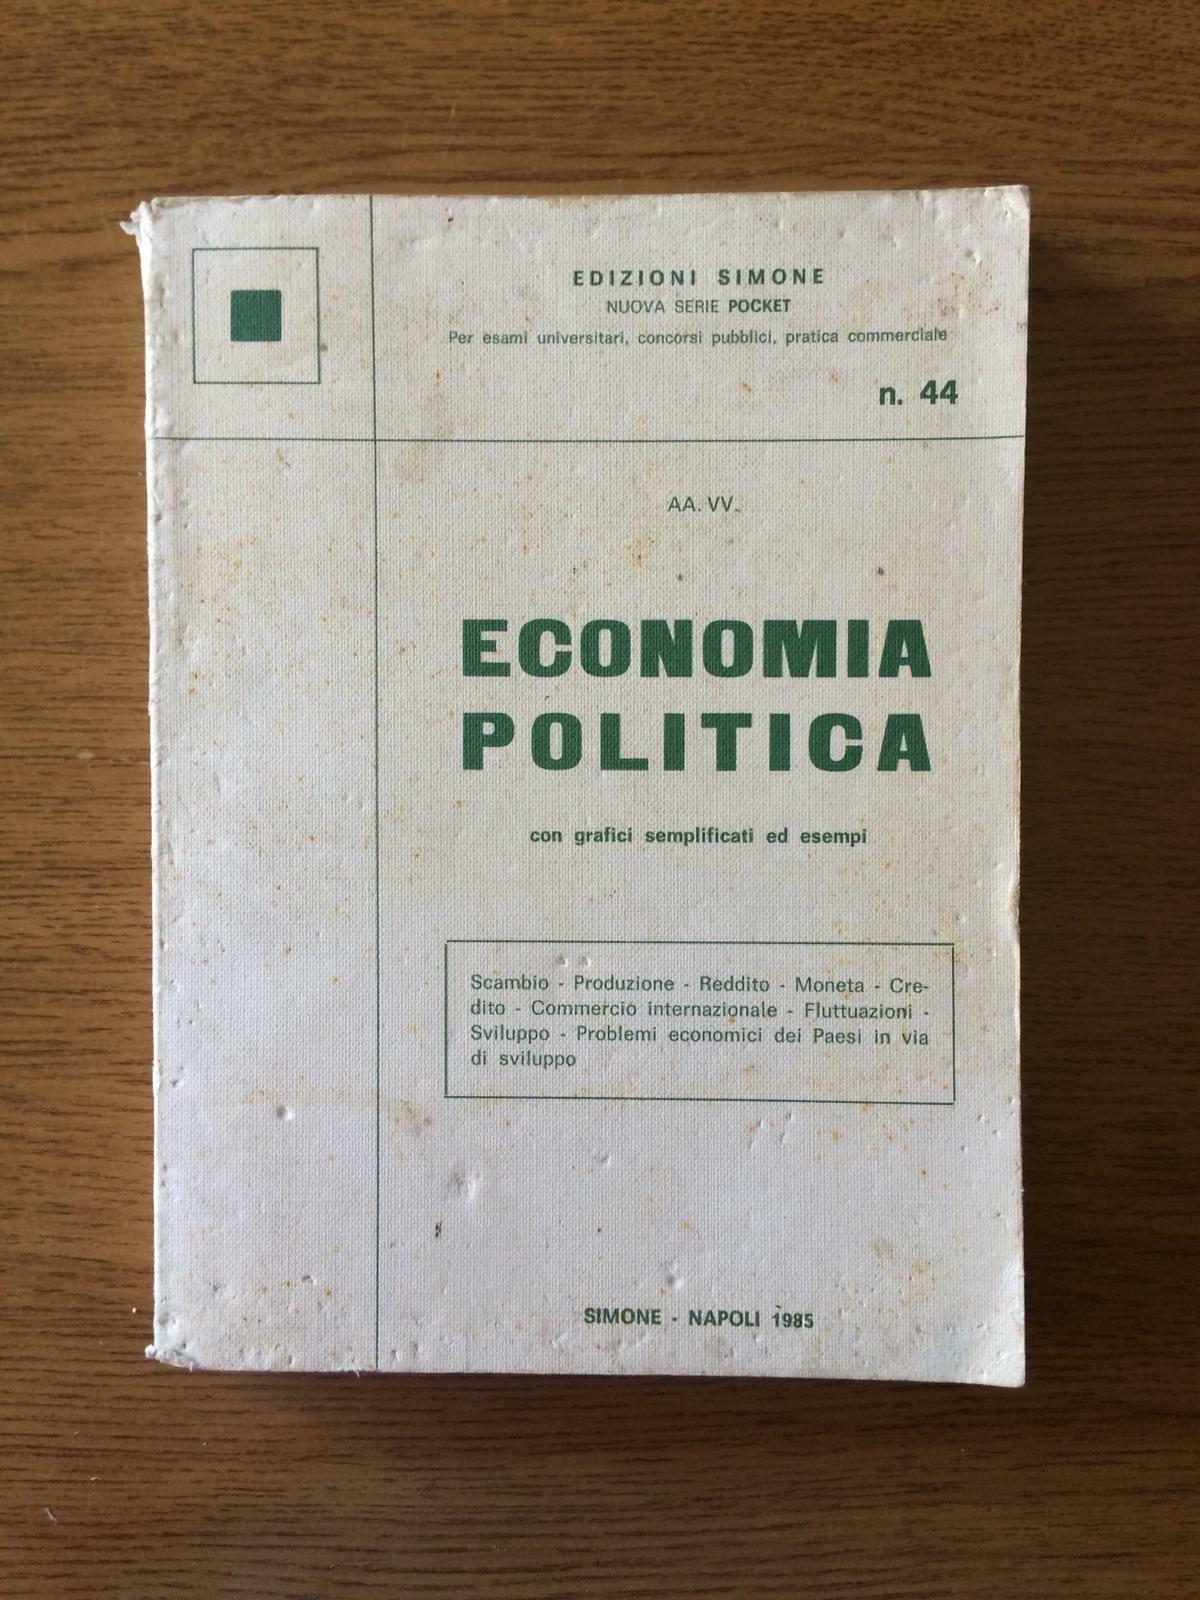 Economia politica - Edizioni Simone - 1985 - AR